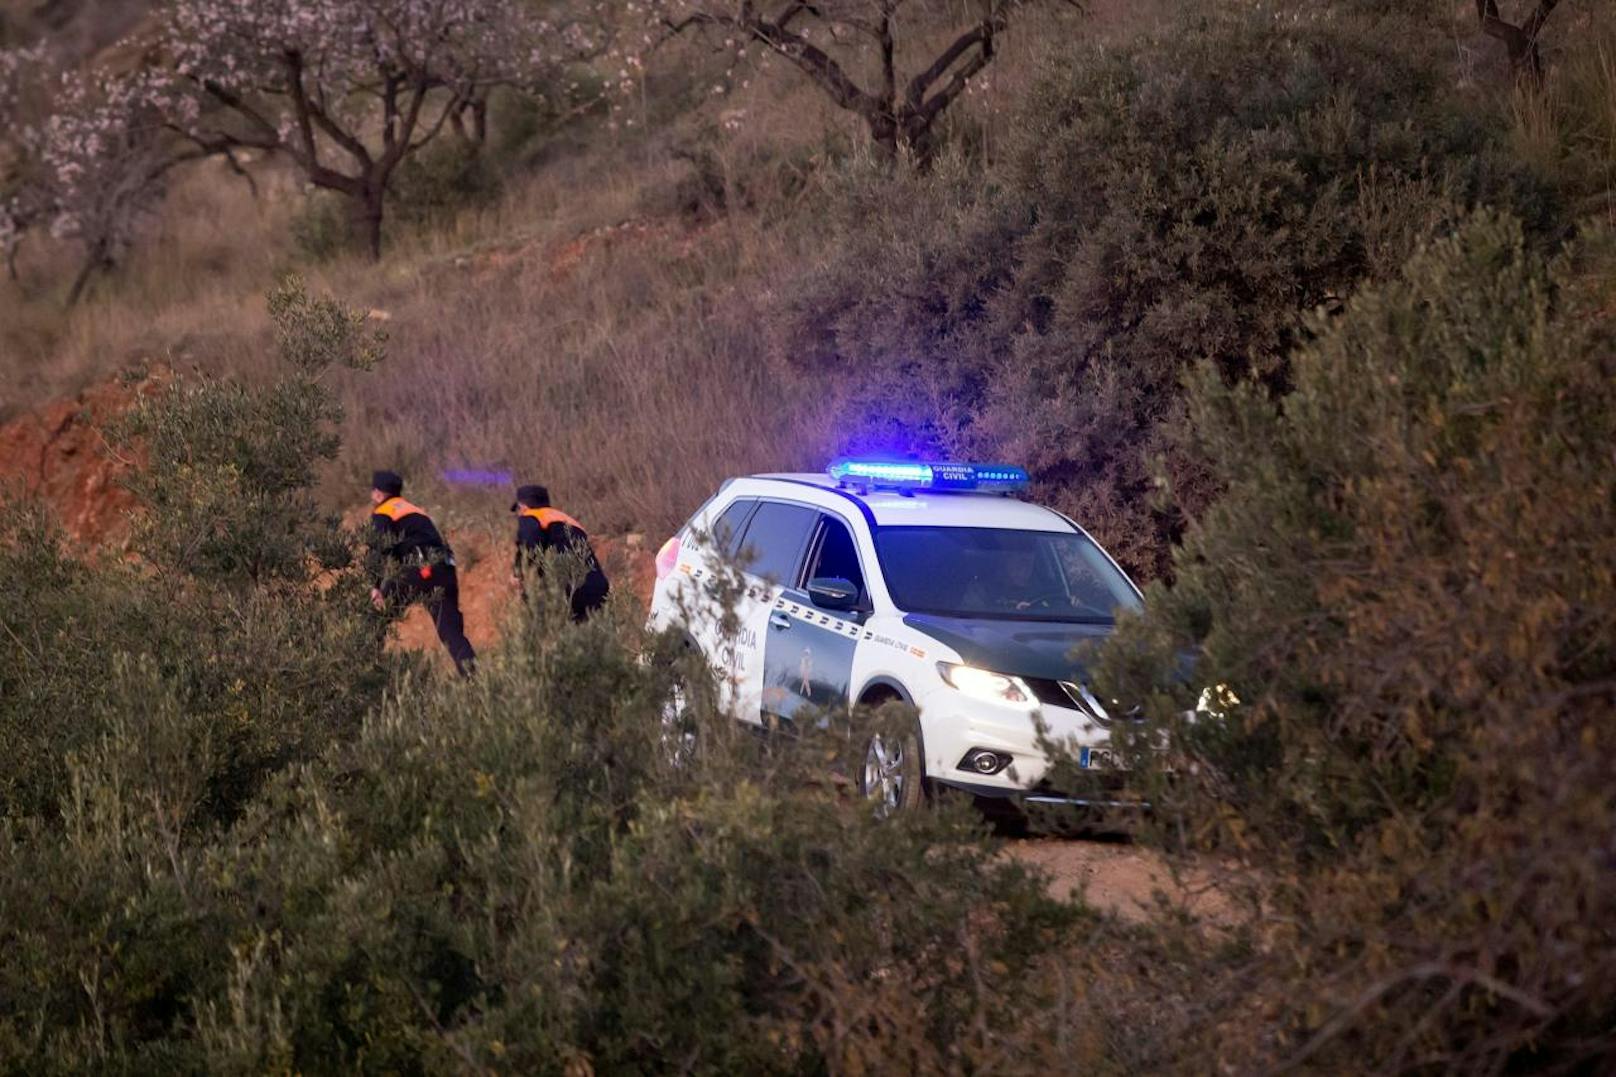 Seit Sonntag, 13. Jänner 2019, kämpfen mehr als einhundert Einsatzkräfte von Polizei, Feuerwehr und Rettung in der südspanischen Provinz Malaga um das Leben des kleinen Julen.